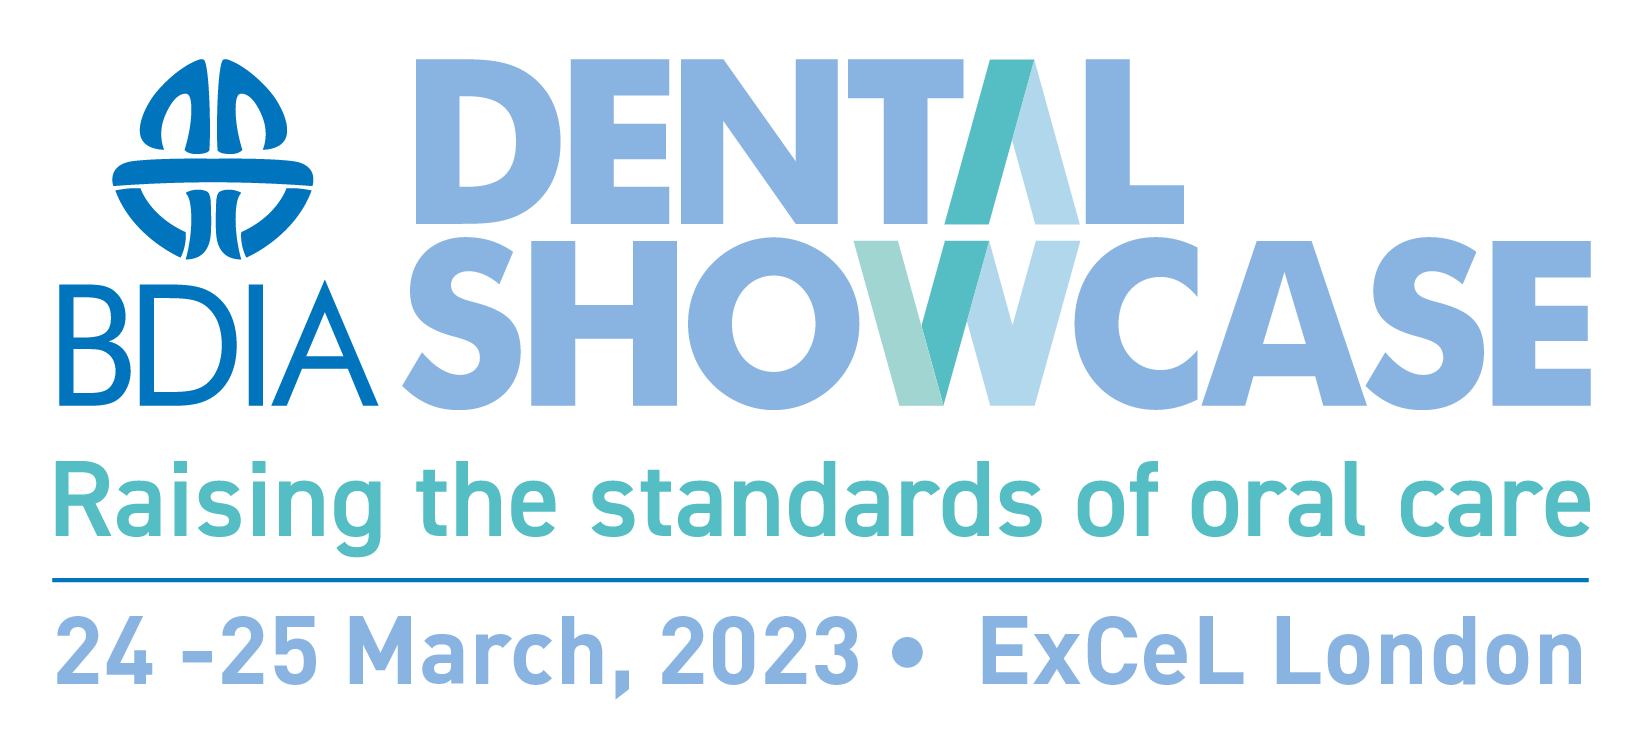 Dental Showcase 2023